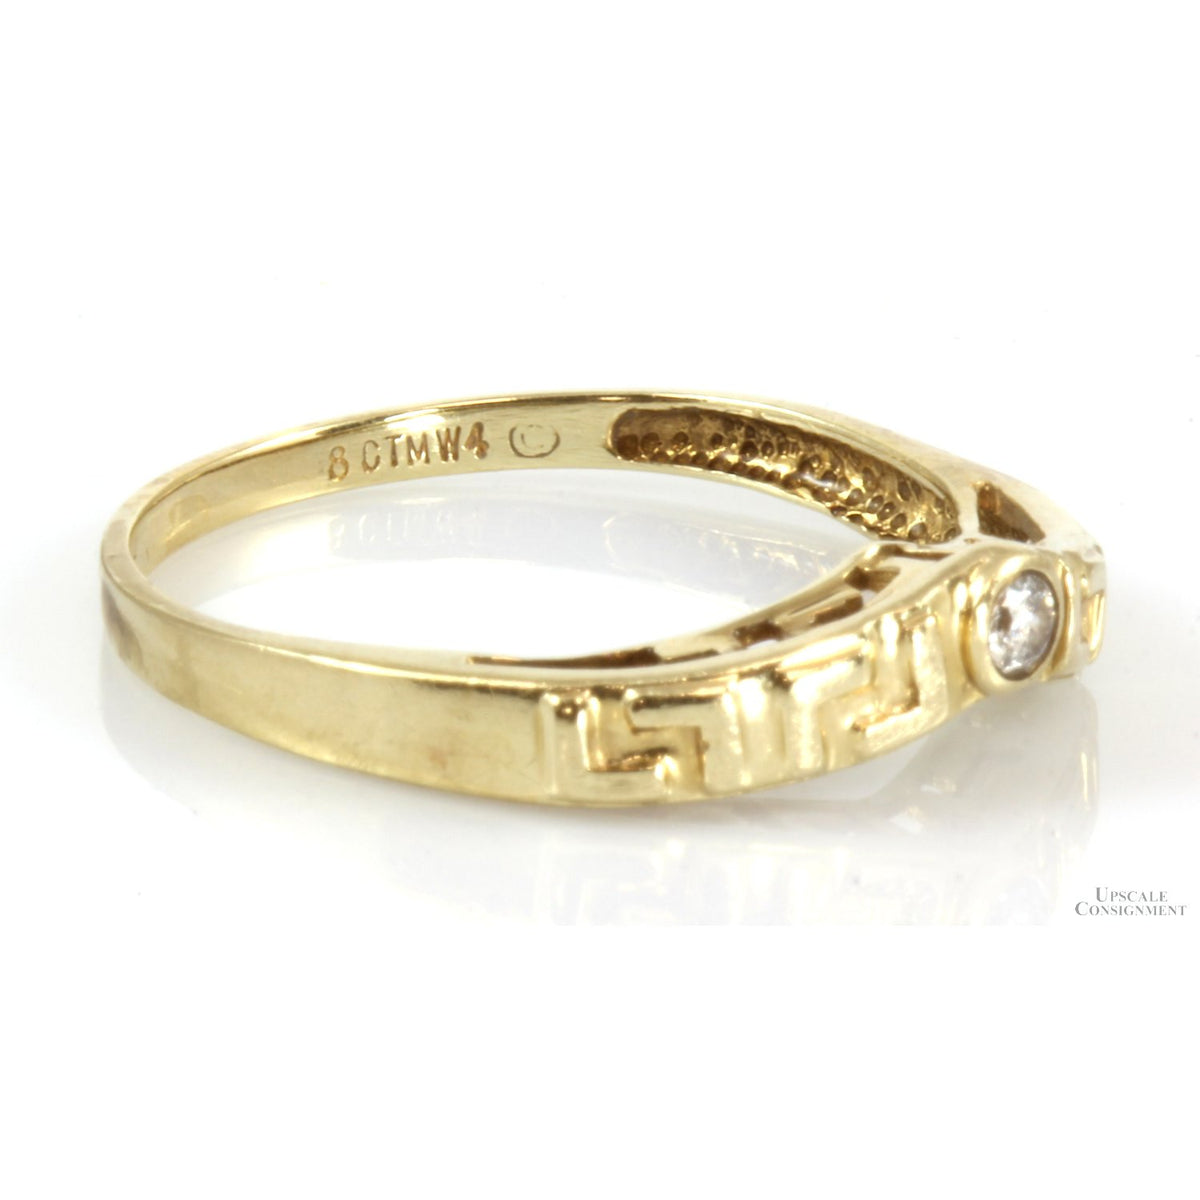 .06ct Diamond V-Shape Design 14K Gold Ring